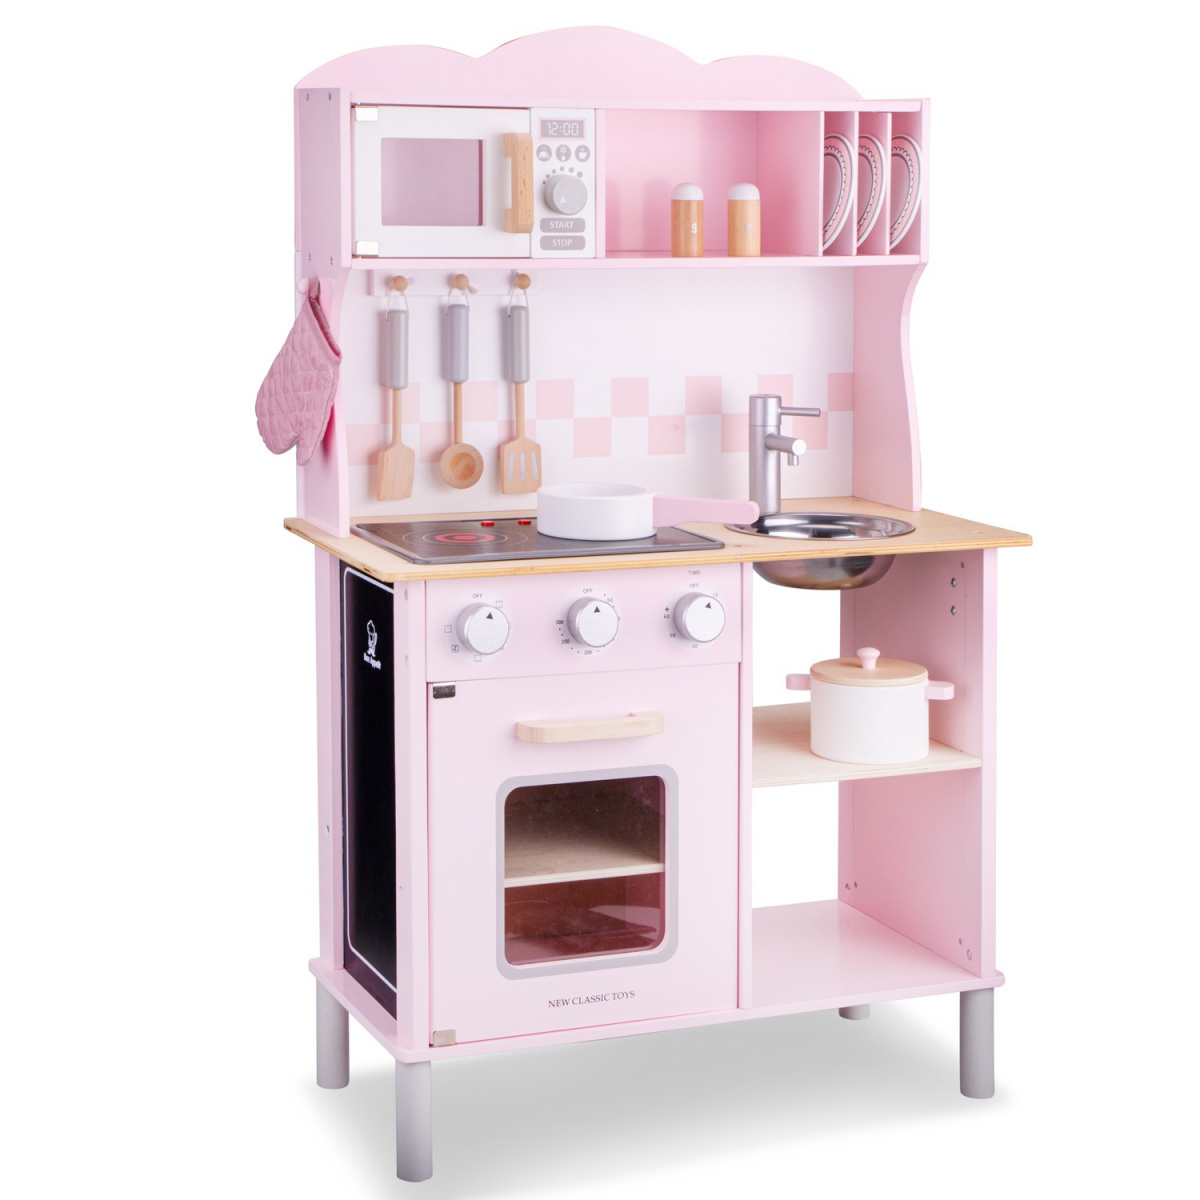 Ігровий набір New Classic Toys Кухня Modern, рожевий (11067) - фото 1